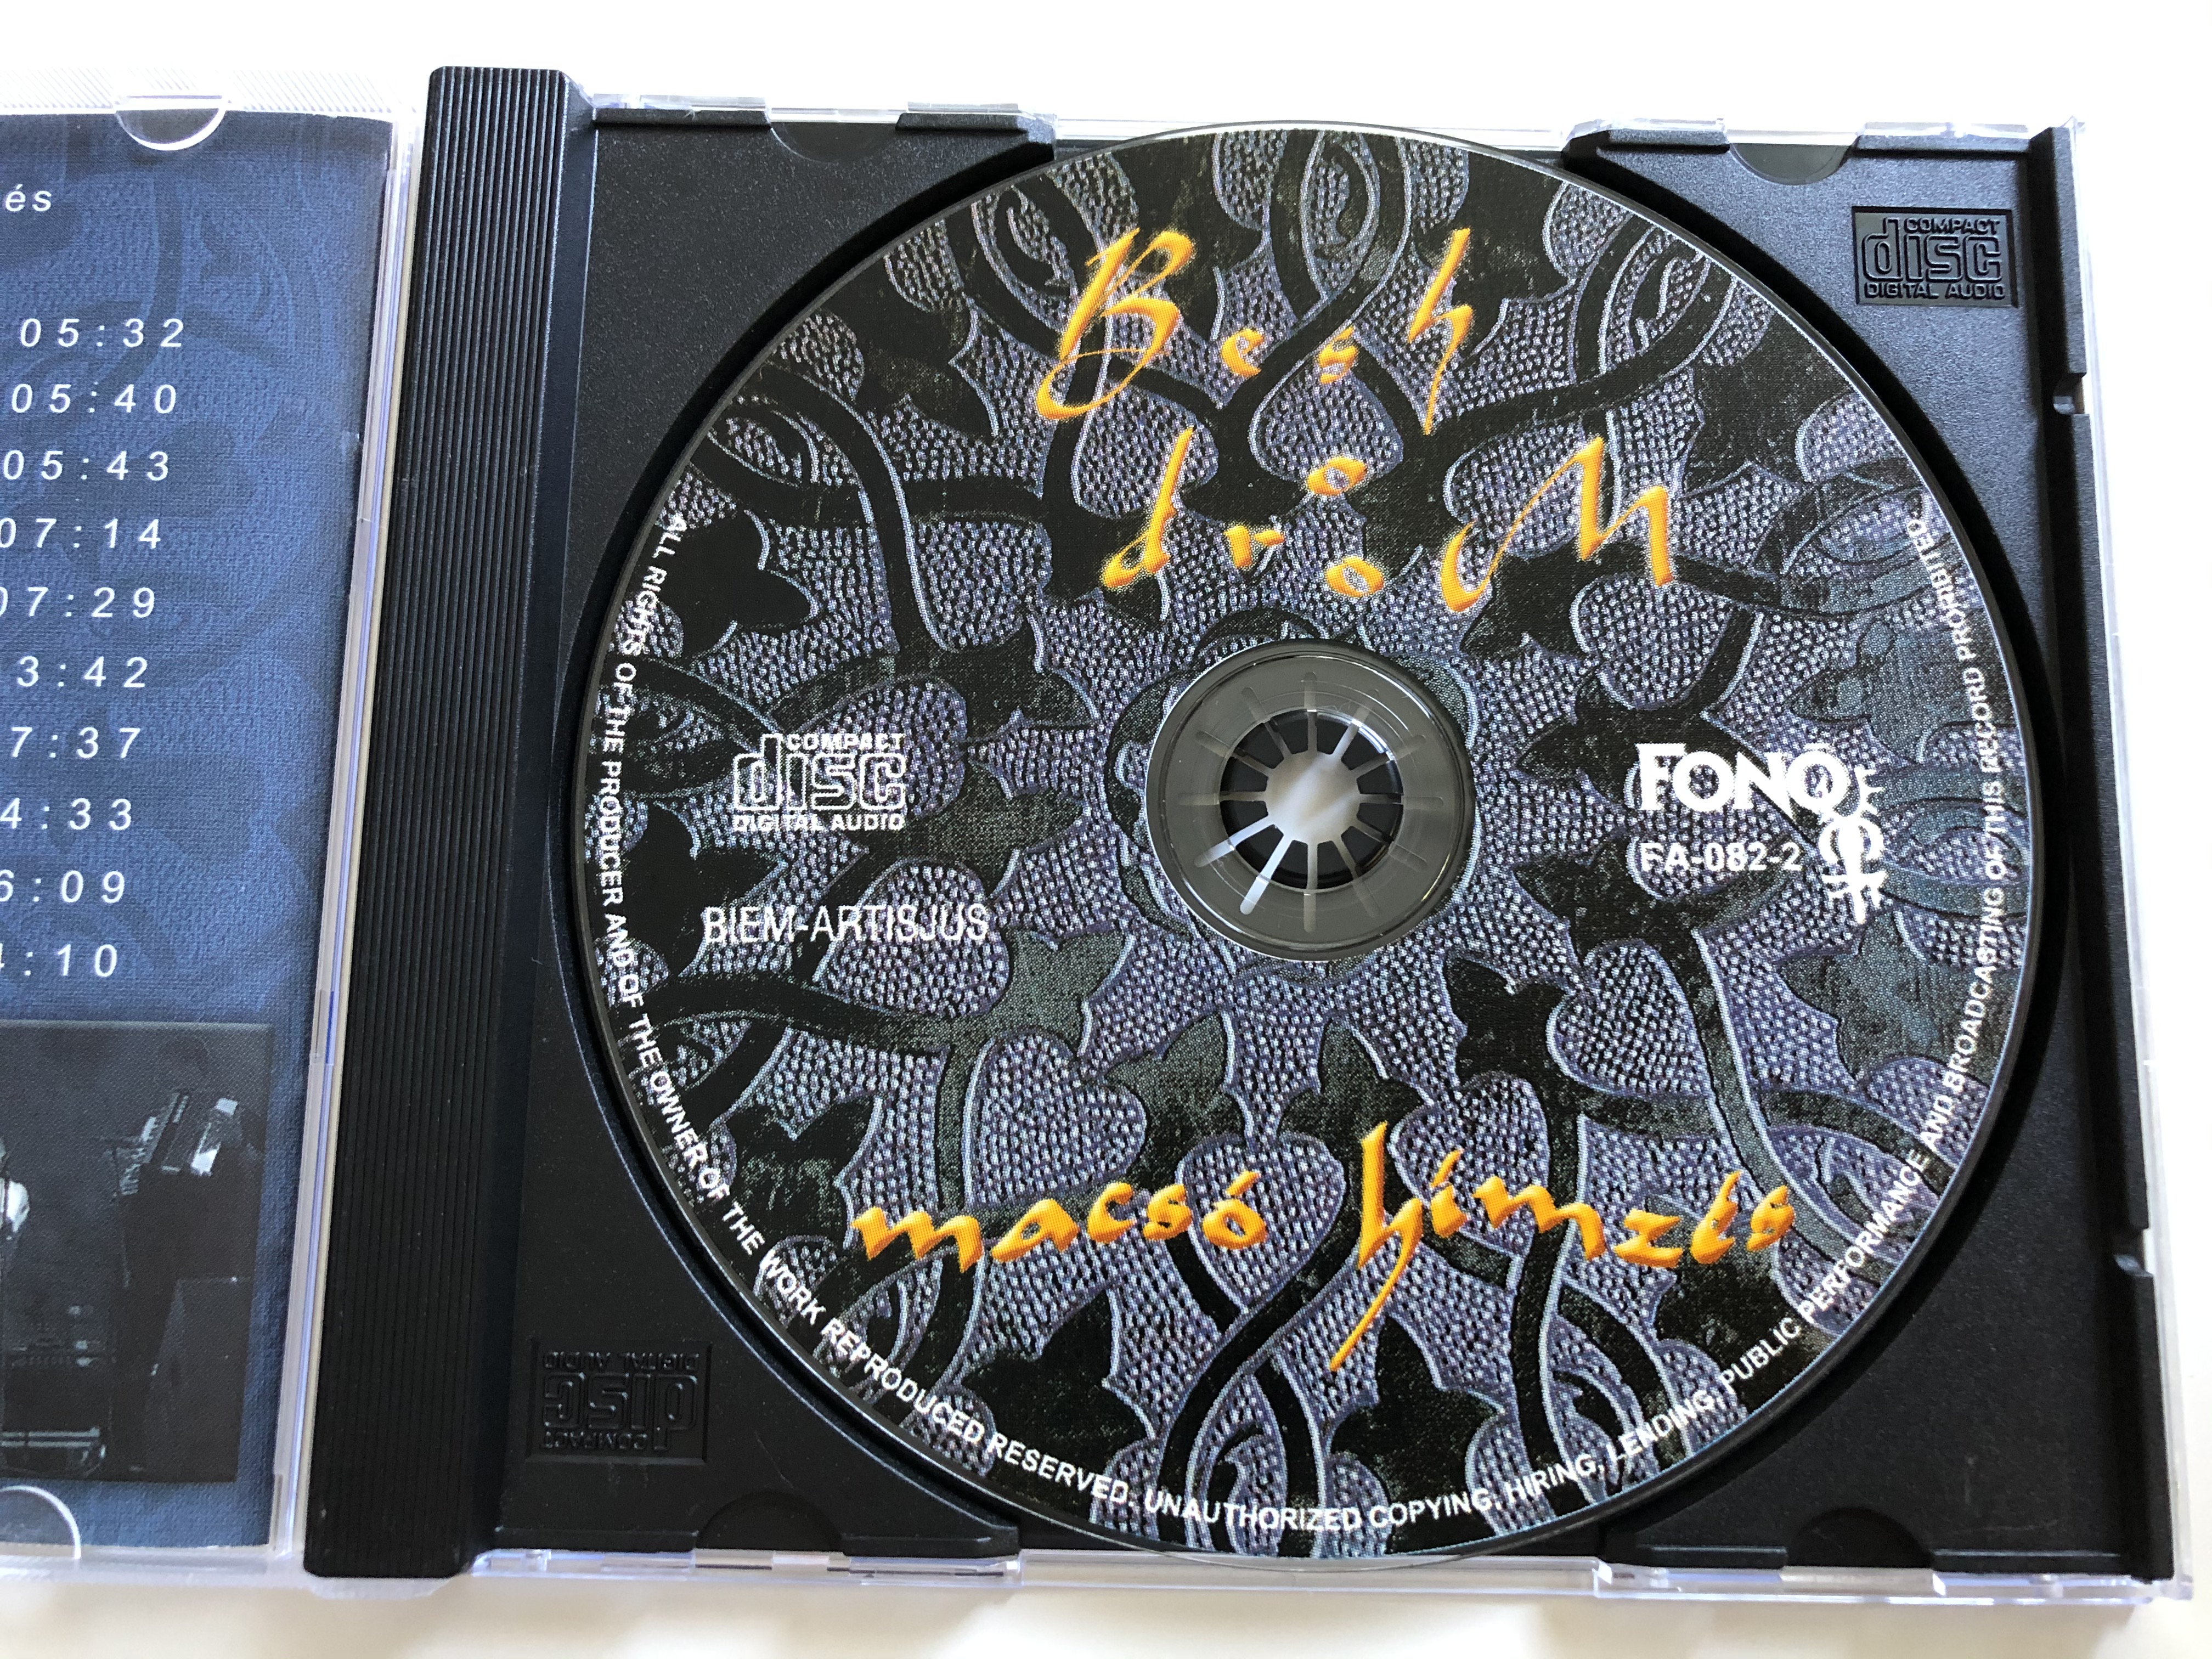 besh-o-drom-macs-h-mz-s-fon-records-audio-cd-2000-fa-082-2-6-.jpg